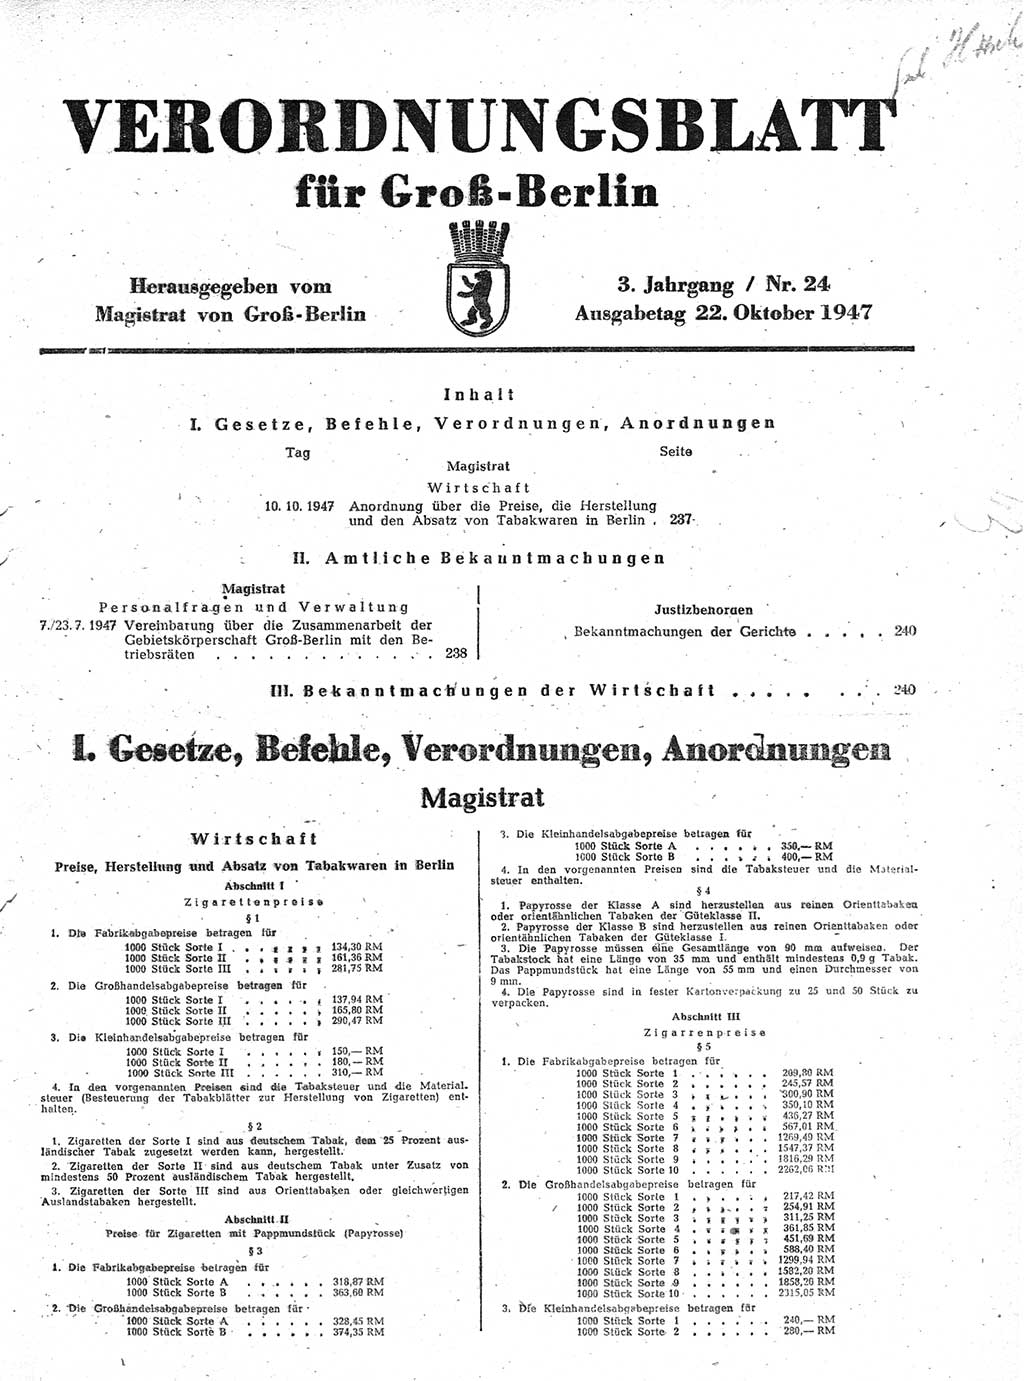 Verordnungsblatt (VOBl.) für Groß-Berlin 1947, Seite 237 (VOBl. Bln. 1947, S. 237)